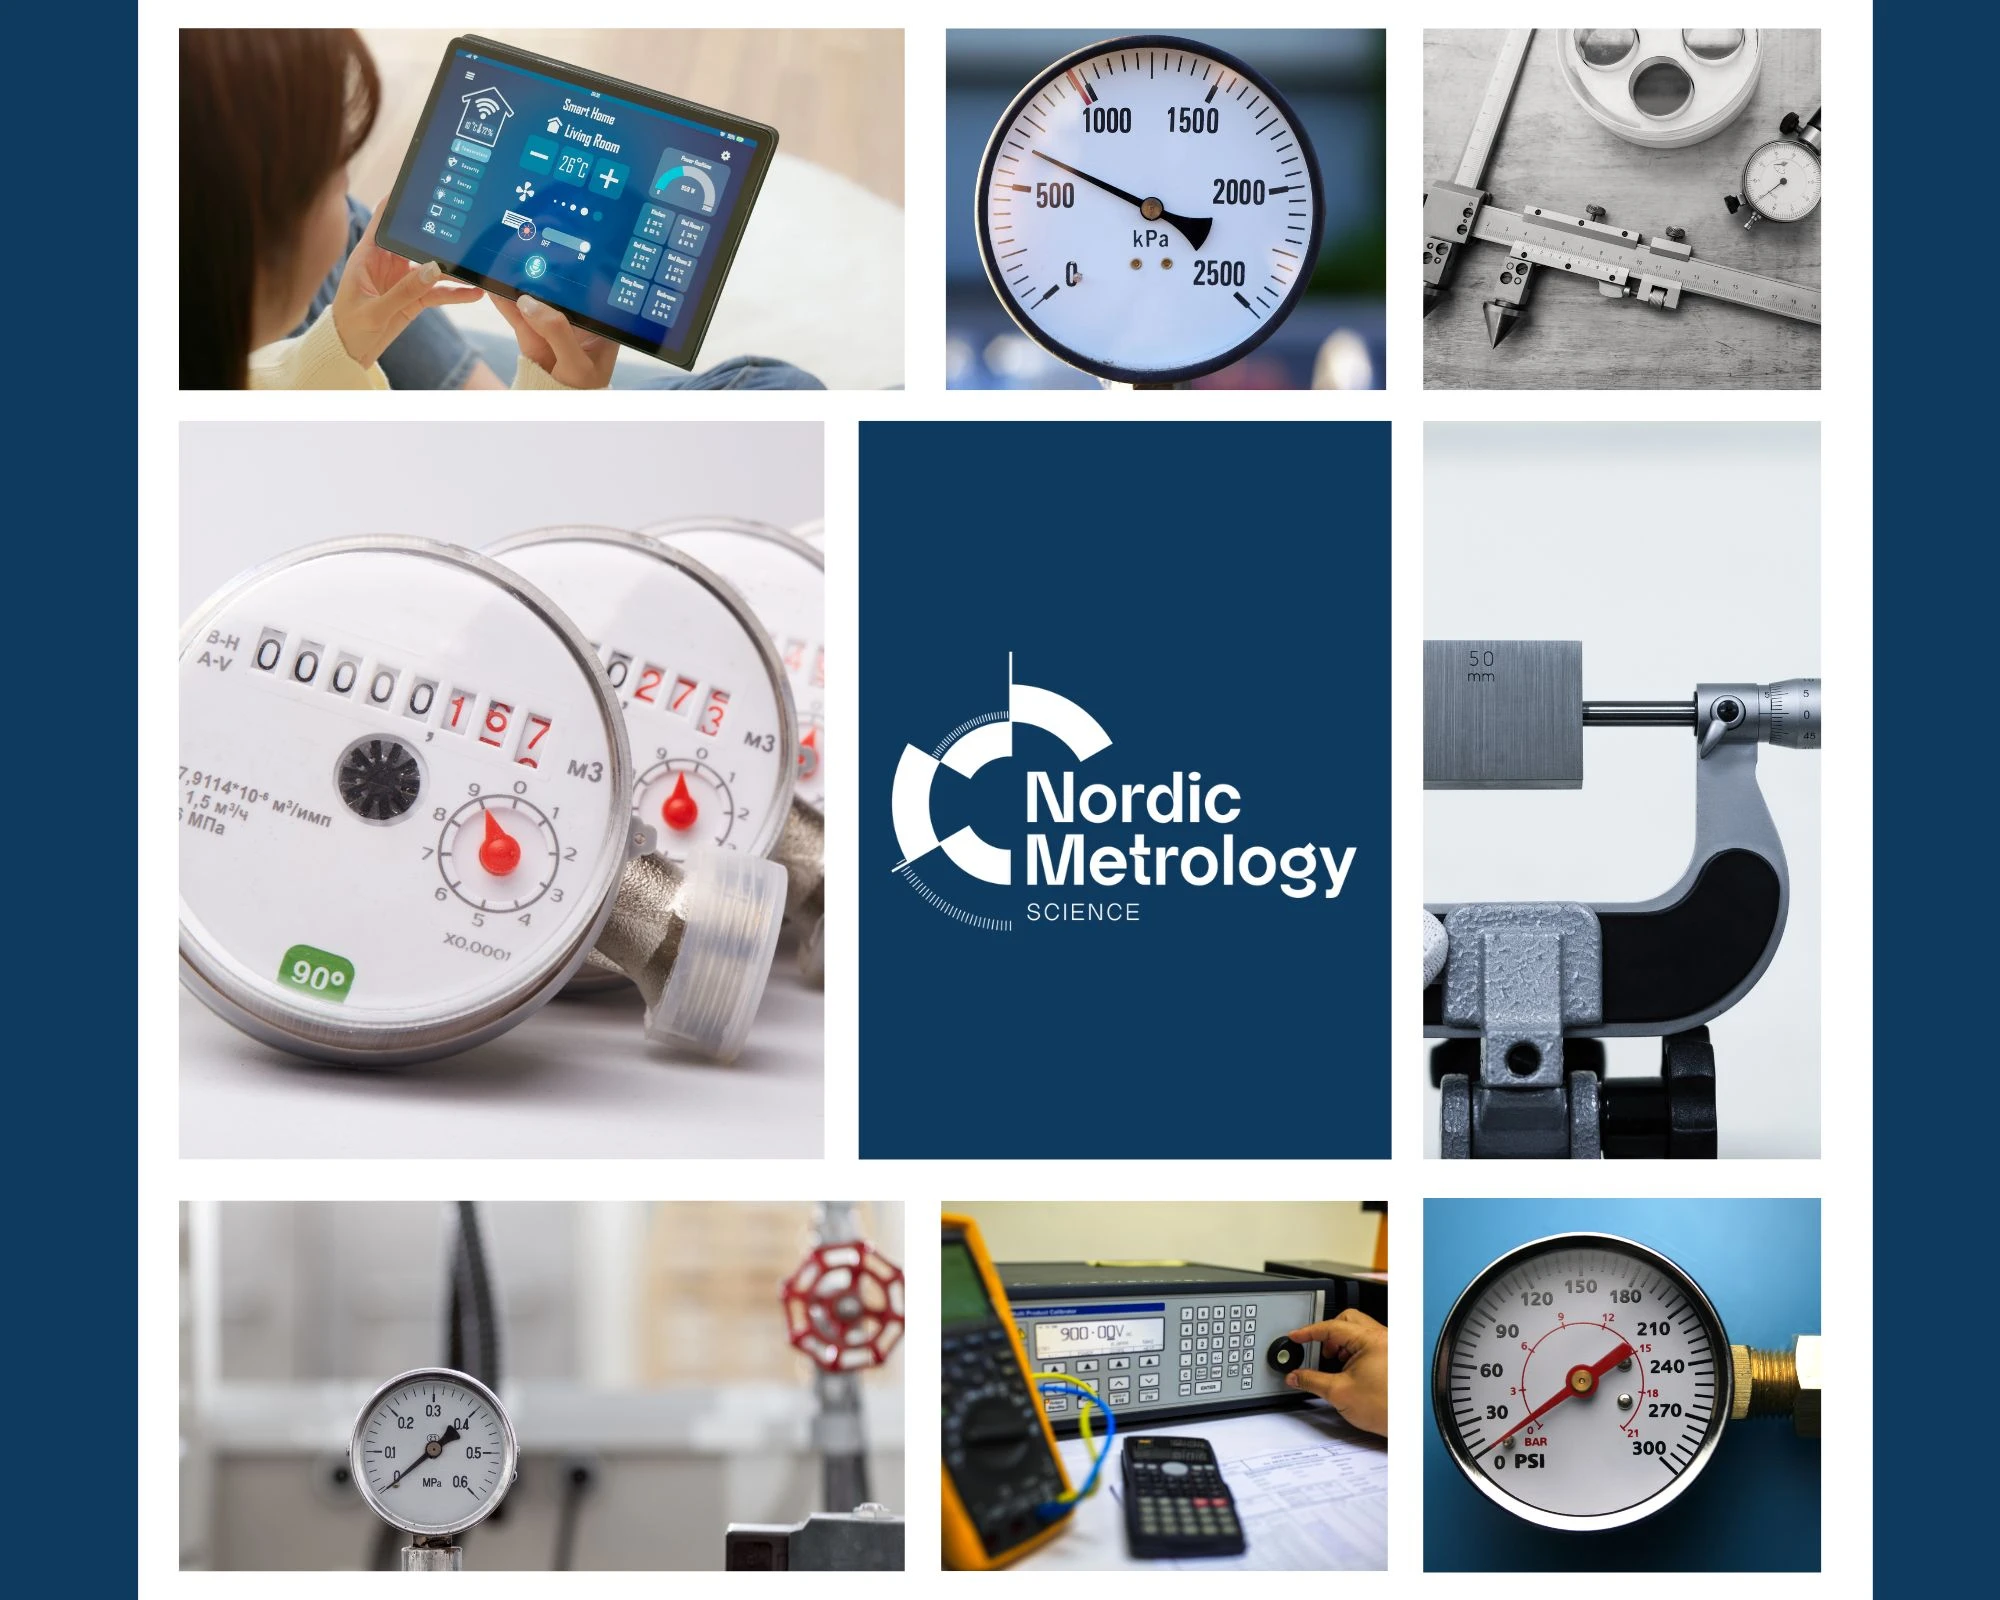 Nordic Metrology Science | Vilniaus metrologijos centras sieks trigubinti apyvartą, nusitaikė į tarptautines rinkas ir tampa Nordic Metrology Science